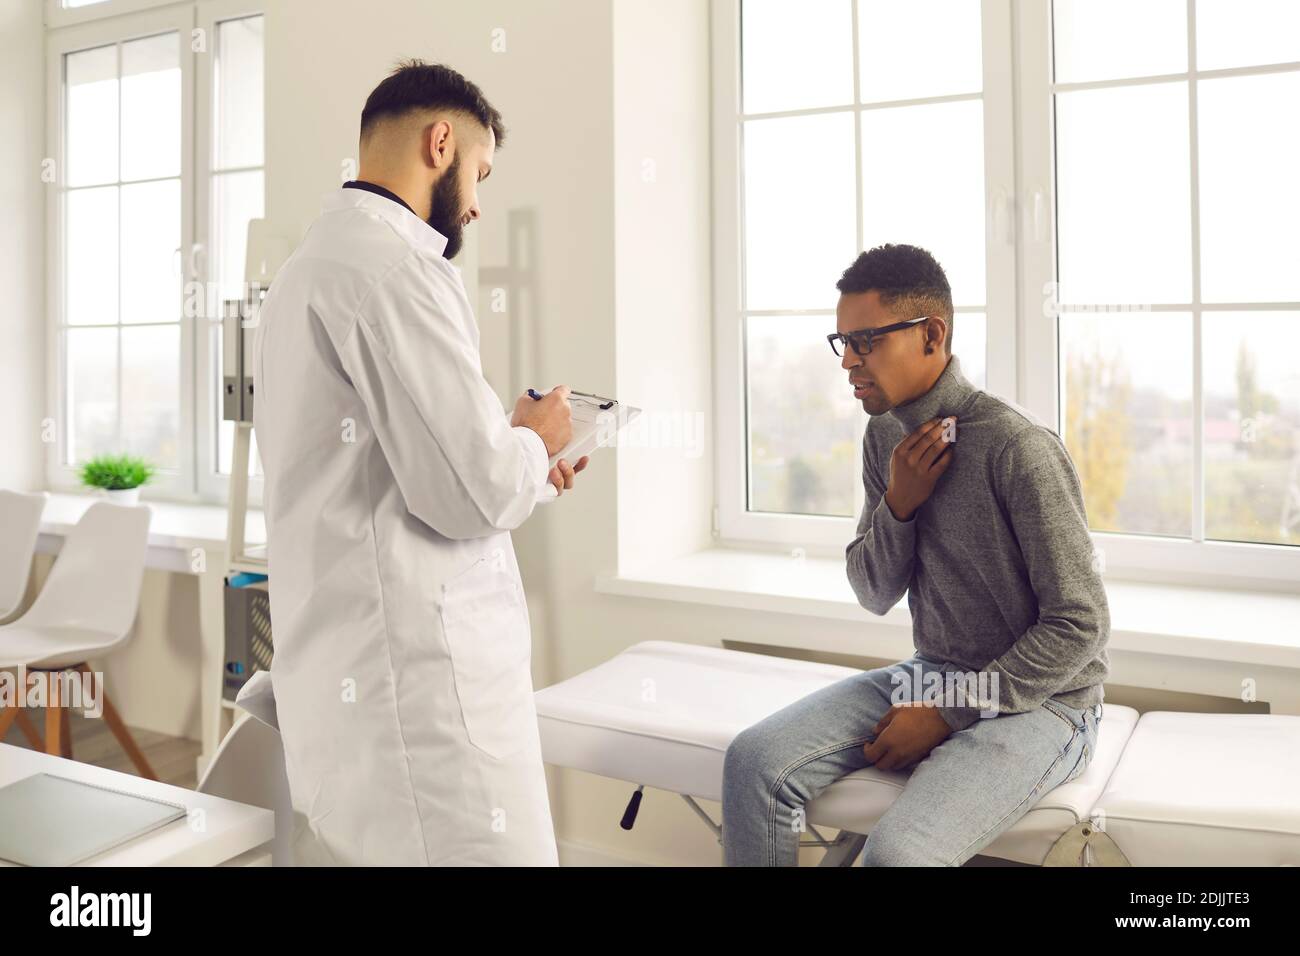 Un jeune patient informe le médecin de son mal de gorge et de sa toux pendant la visite à l'hôpital Banque D'Images